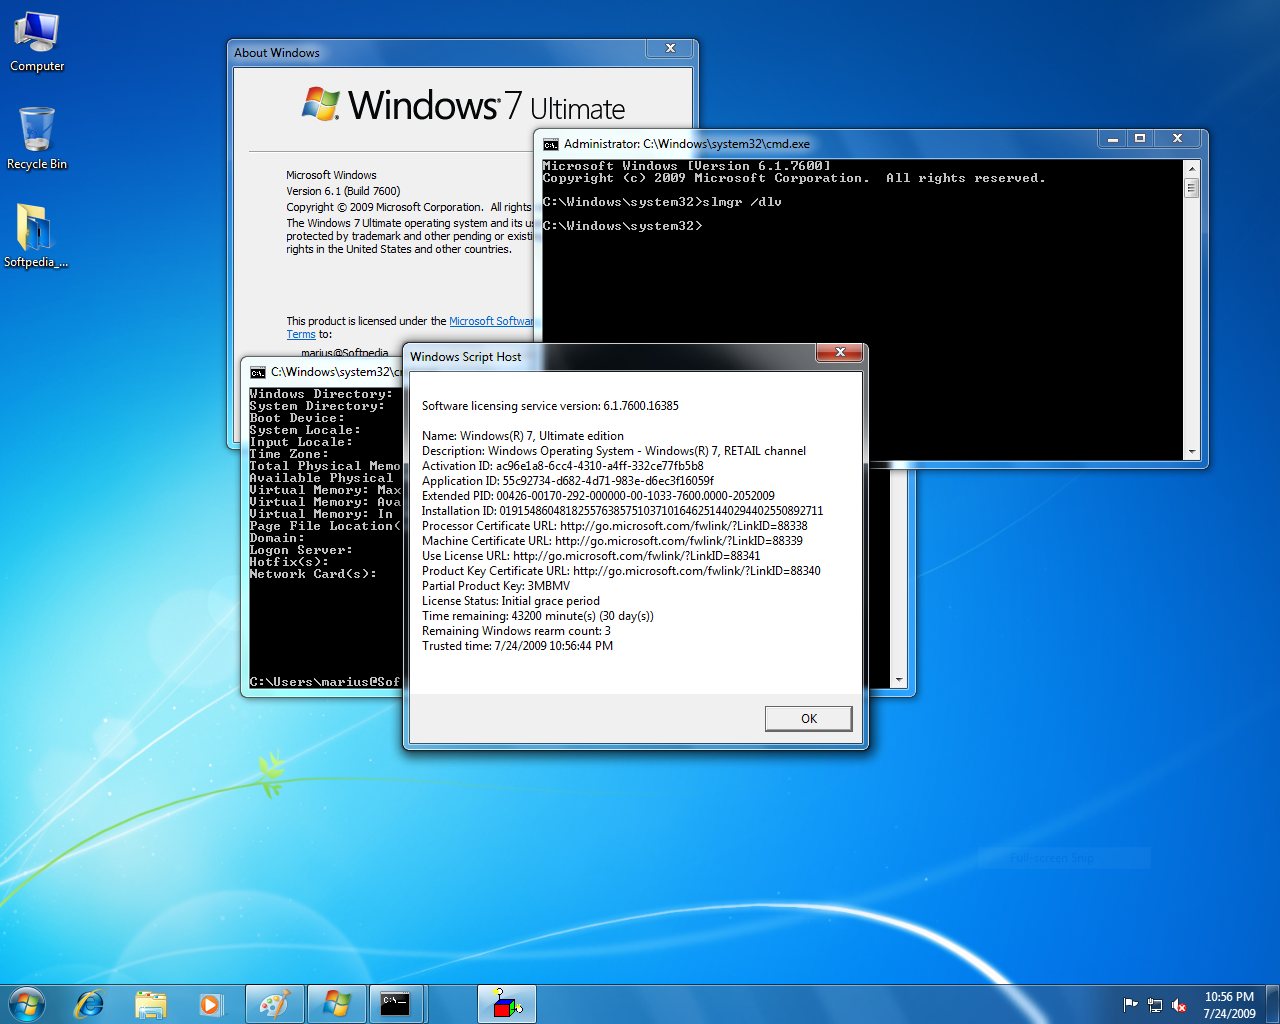 Windows 7 rtm 7600 activator download windows 7